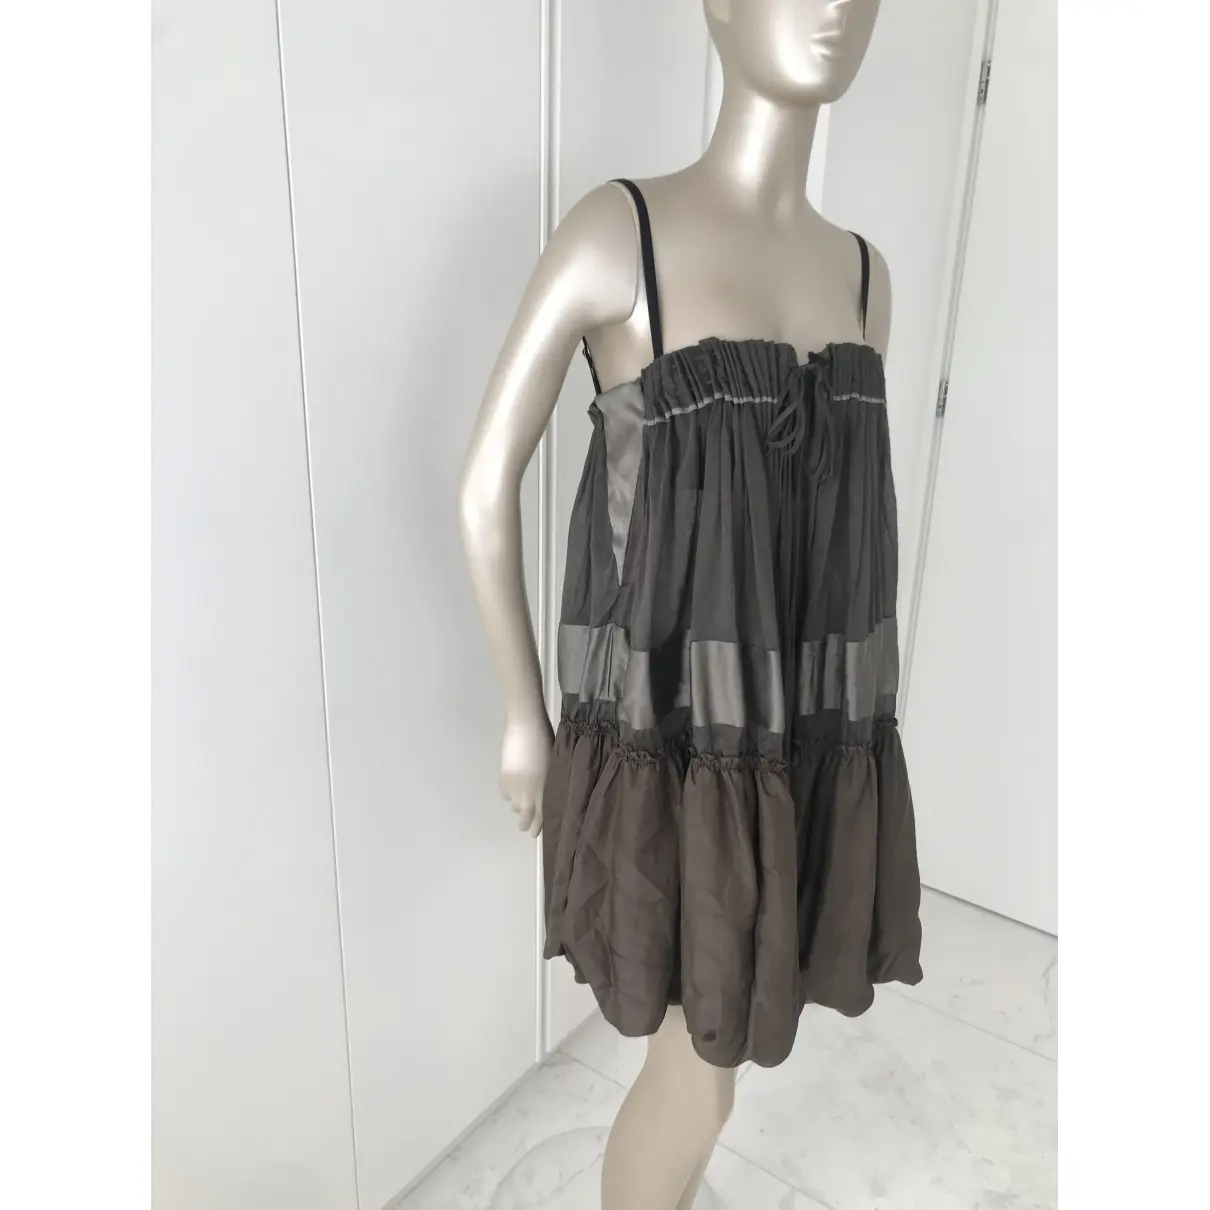 Gianfranco Ferré Mini dress for sale - Vintage